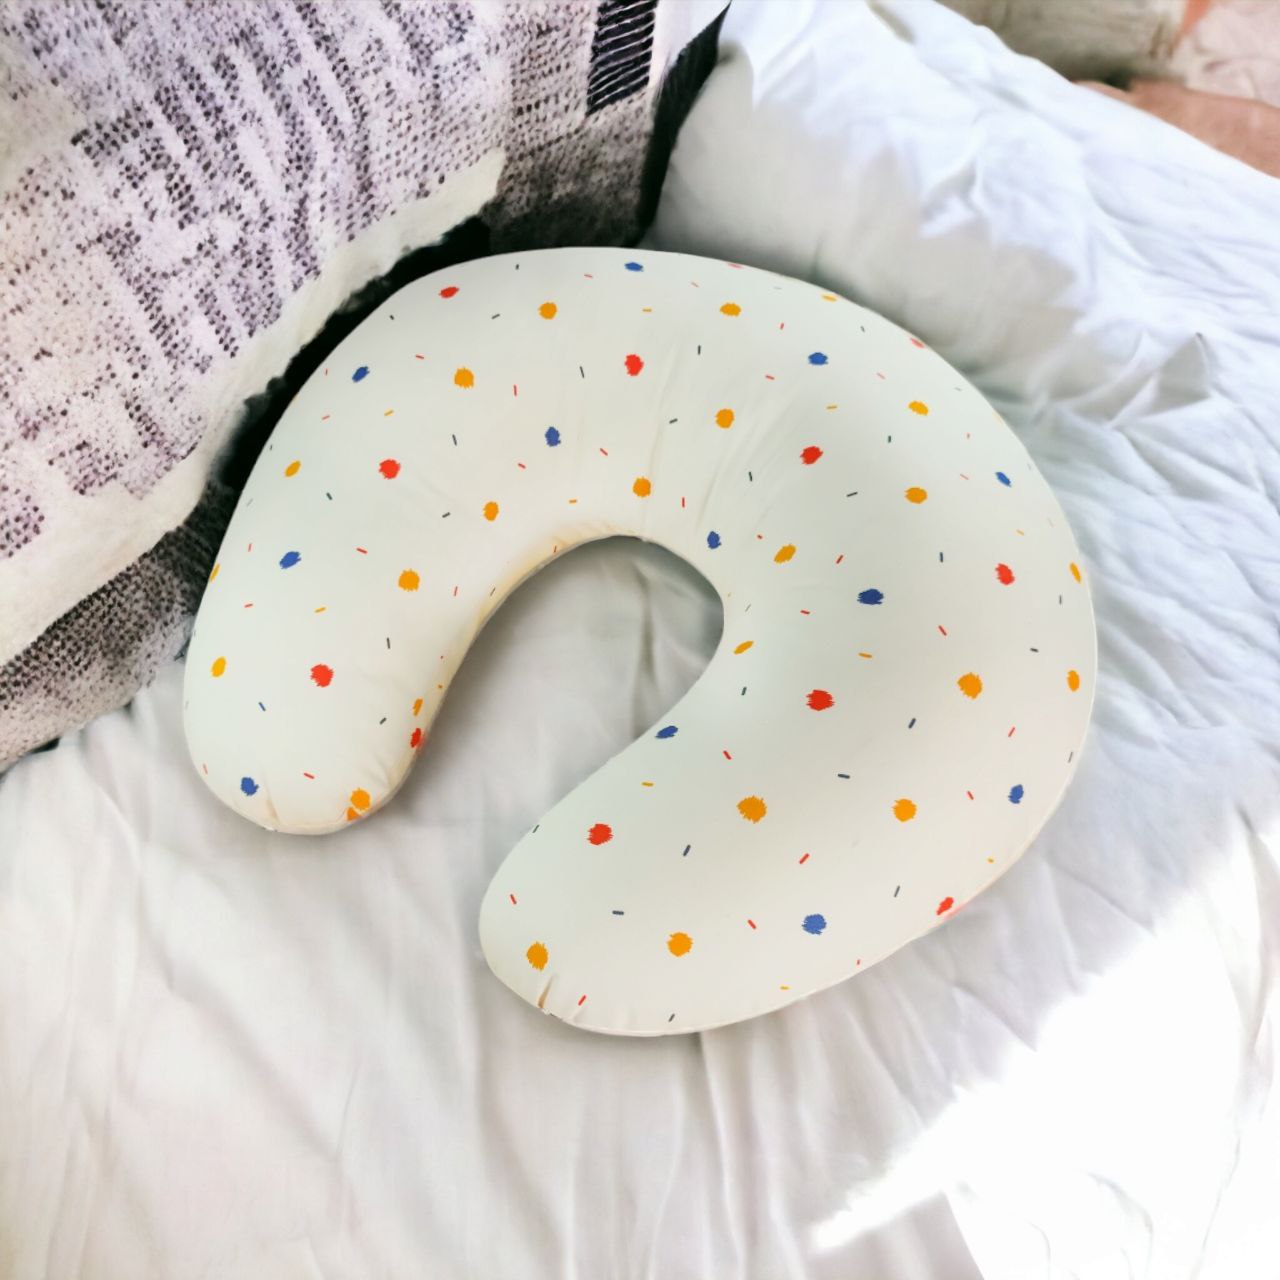 Crescent Pillow